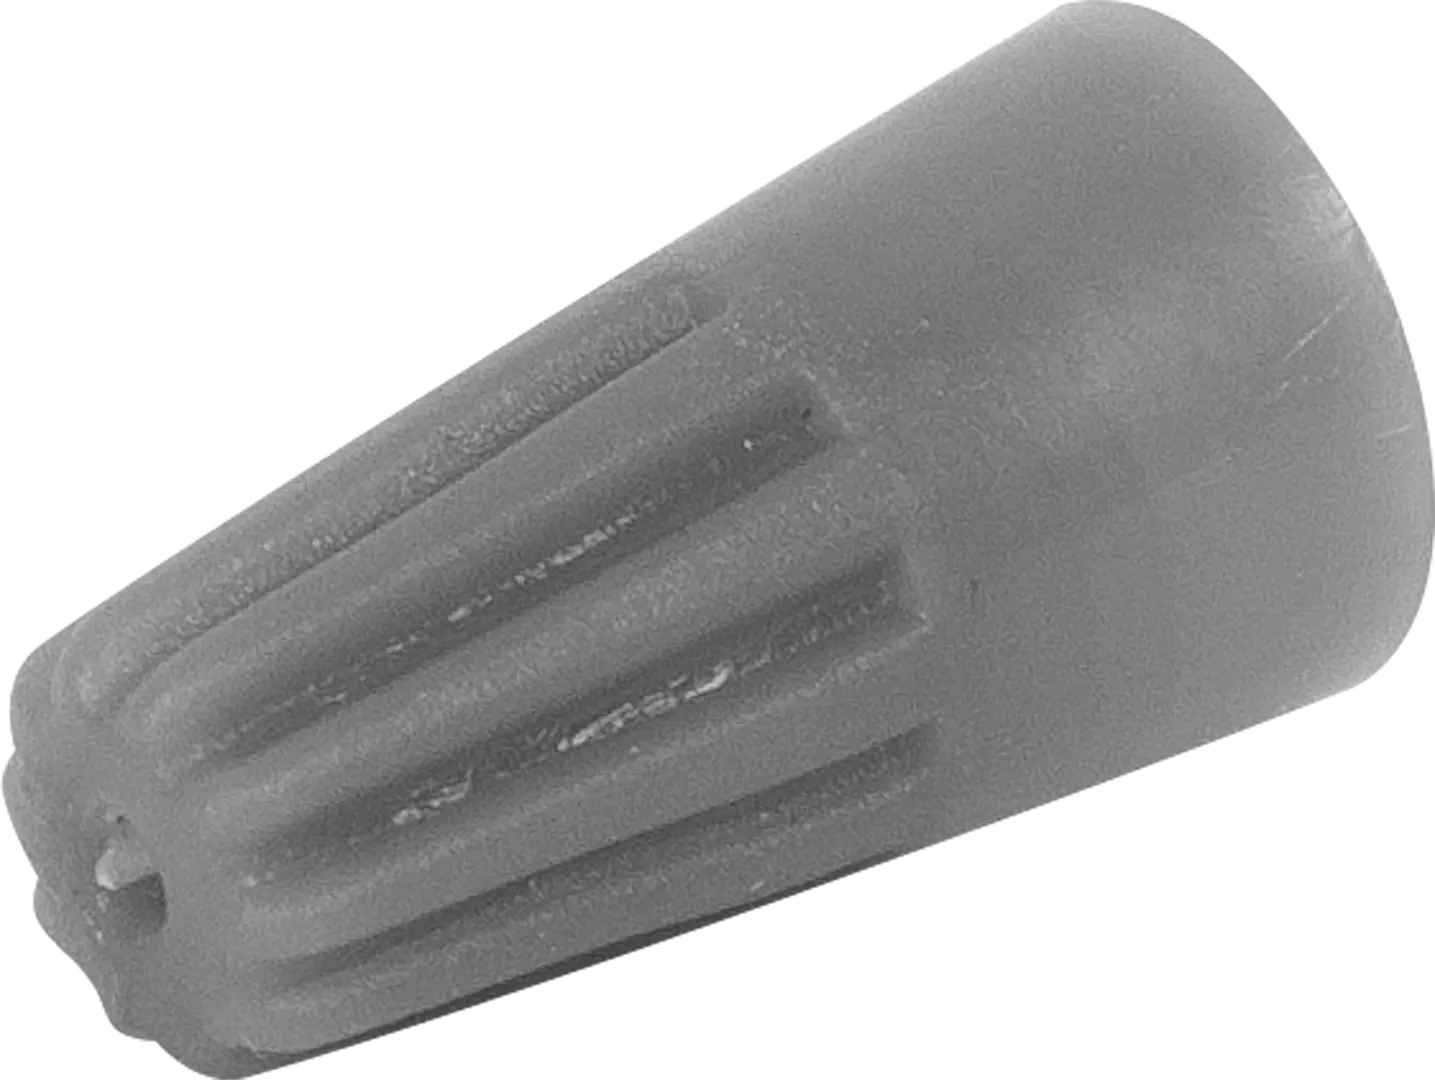 Соединительный изолирующий зажим Duwi СИЗ-1 1-3 мм цвет серый 10 шт.